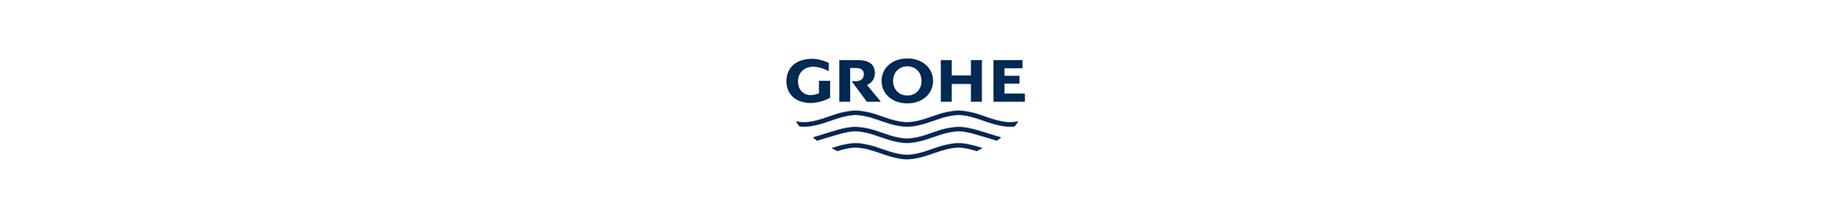 nos-fournisseurs-grohe-logo